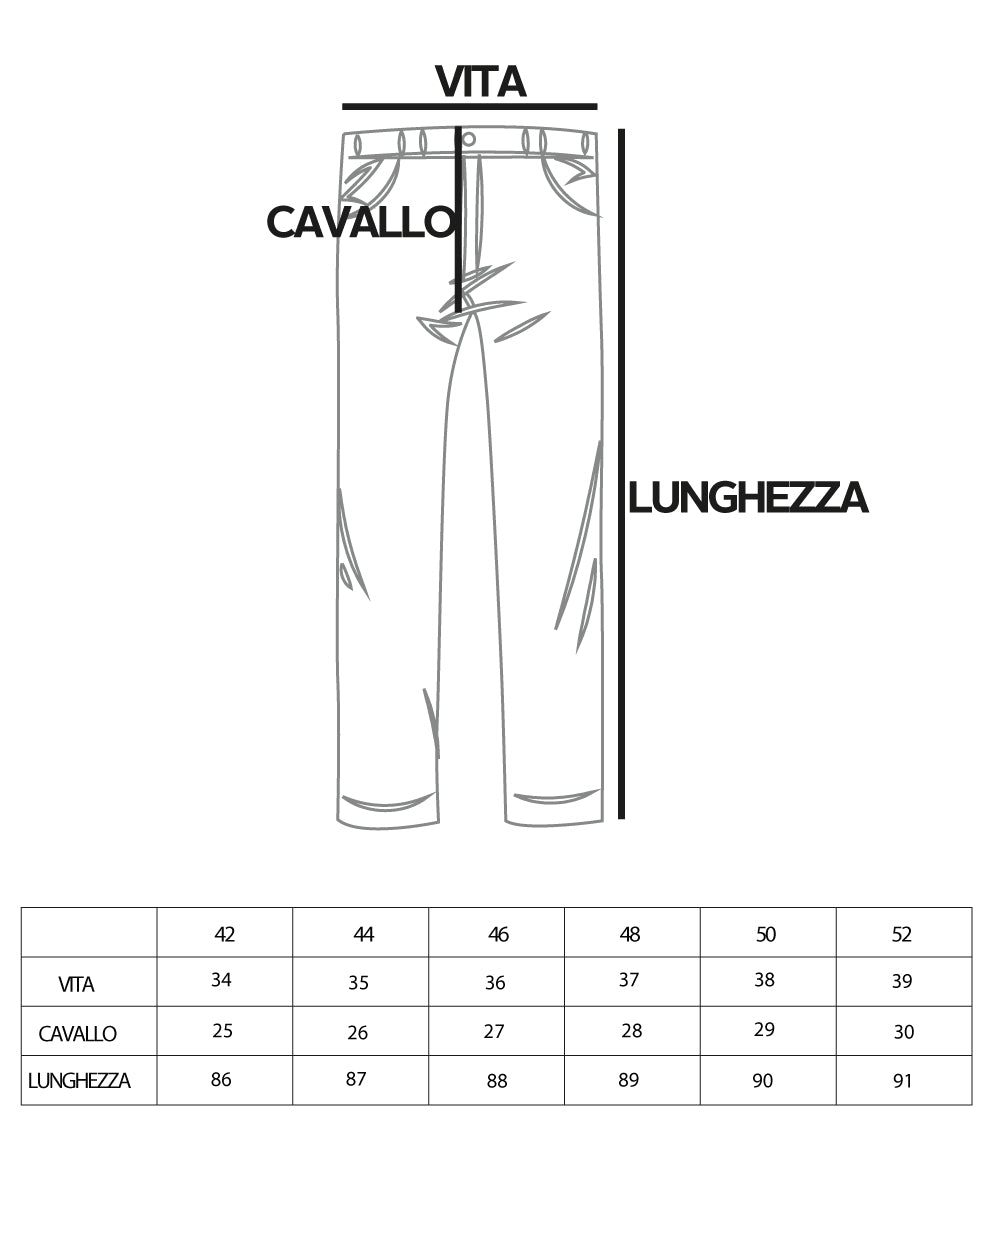 Pantaloni Uomo Tasca America Basic Cotone Elastico Grigio Chiaro Slim Classico GIOSAL-P5008A